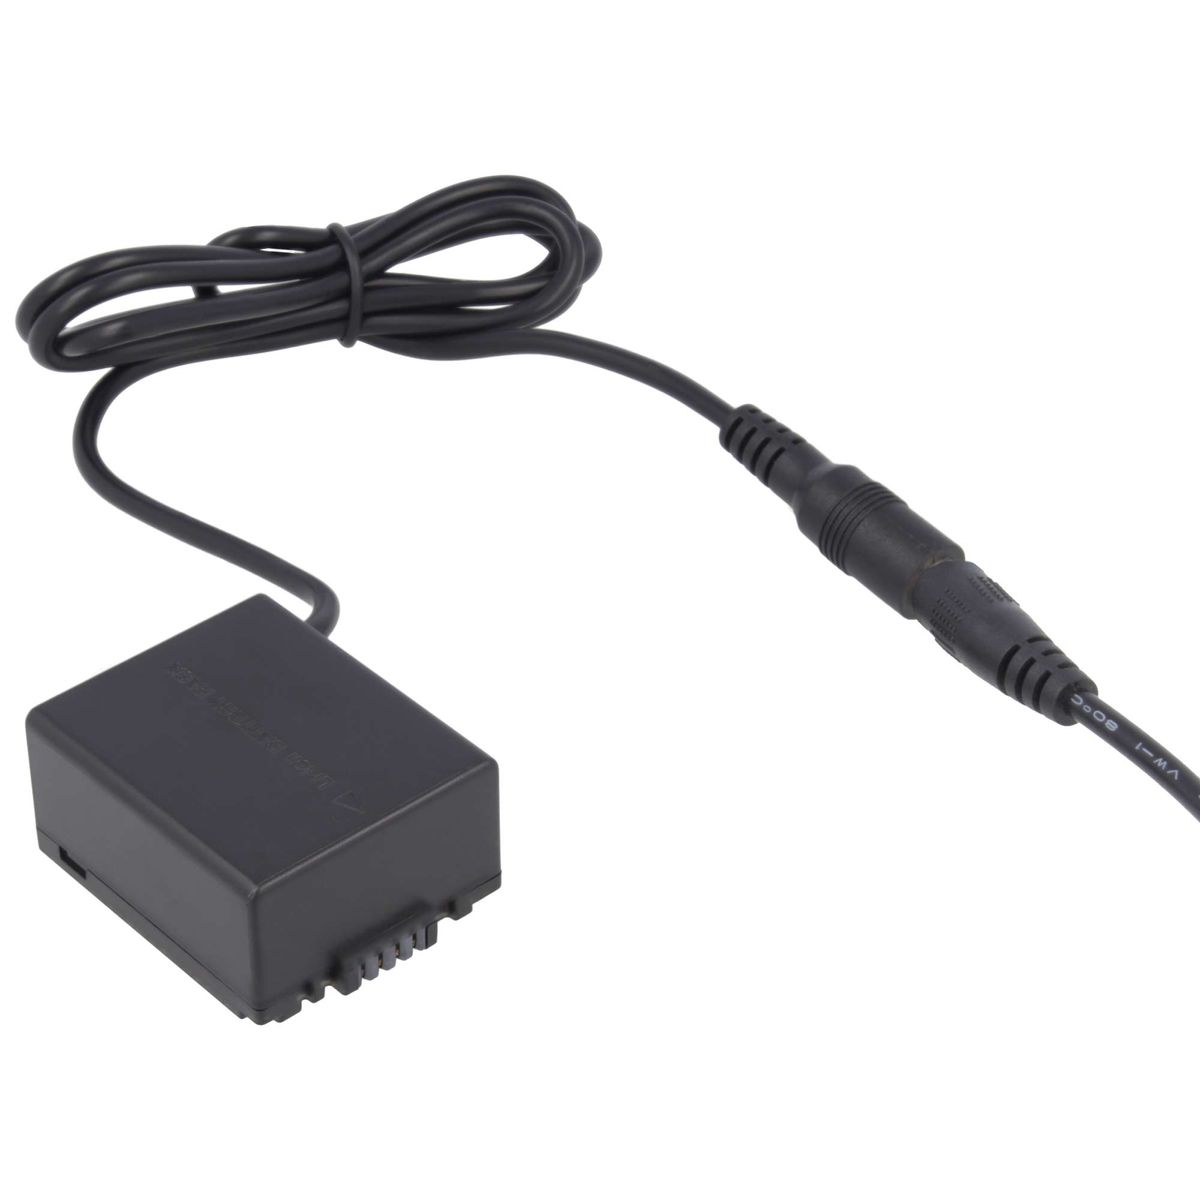 Adapter mit AKKU-KING Panasonic Panasonic, DCC3 + USB-C Kuppler keine Angabe Ladegerät kompatibel